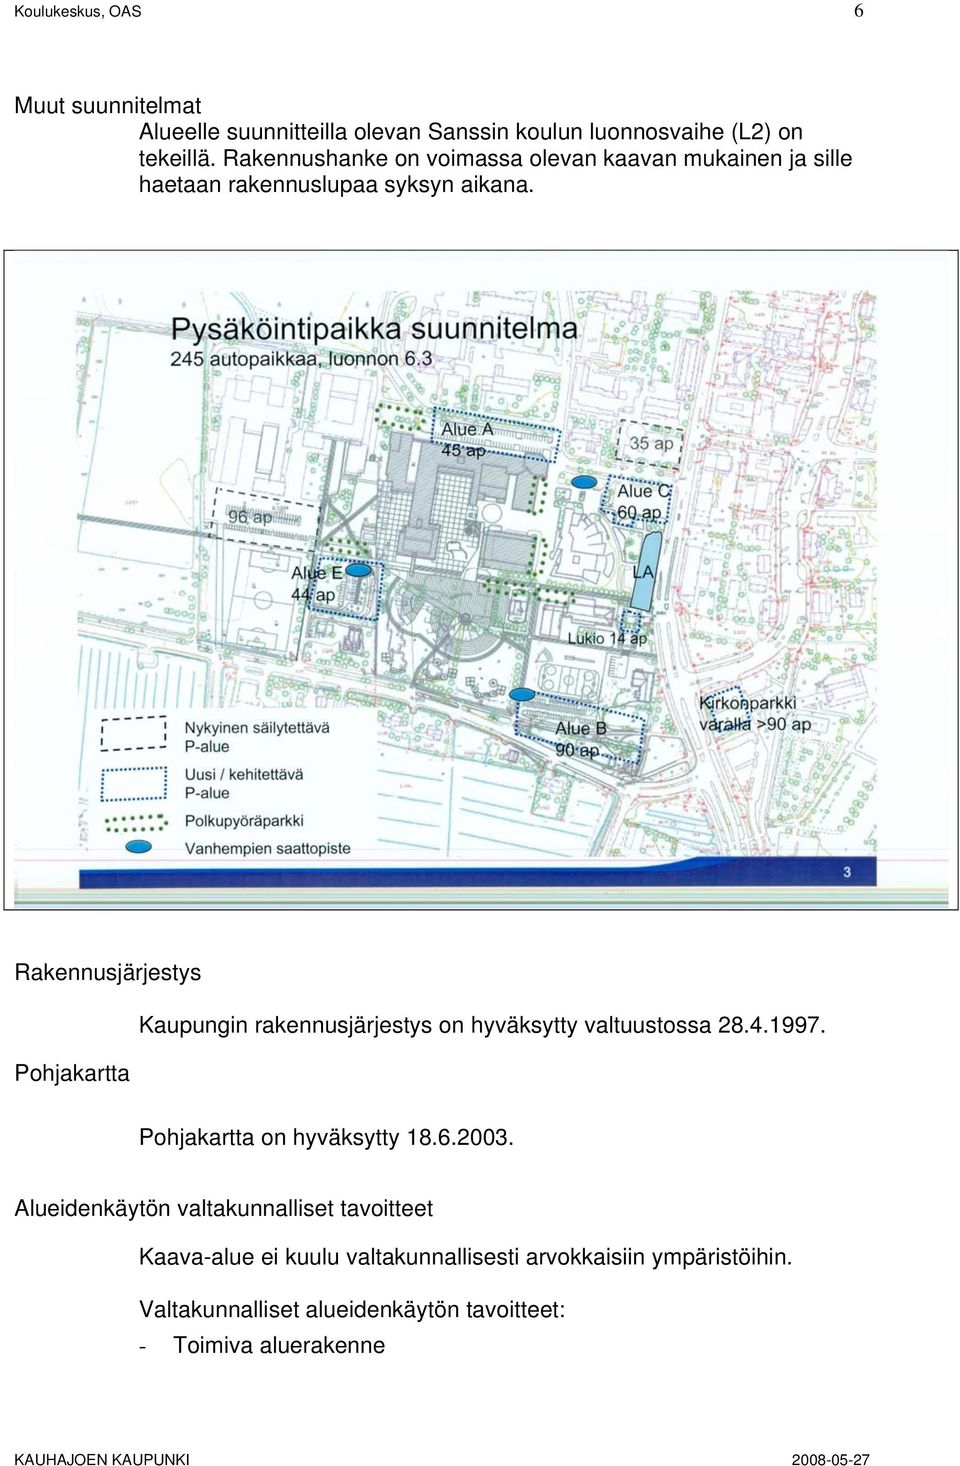 Rakennusjärjestys Pohjakartta Kaupungin rakennusjärjestys on hyväksytty valtuustossa 28.4.1997. Pohjakartta on hyväksytty 18.6.